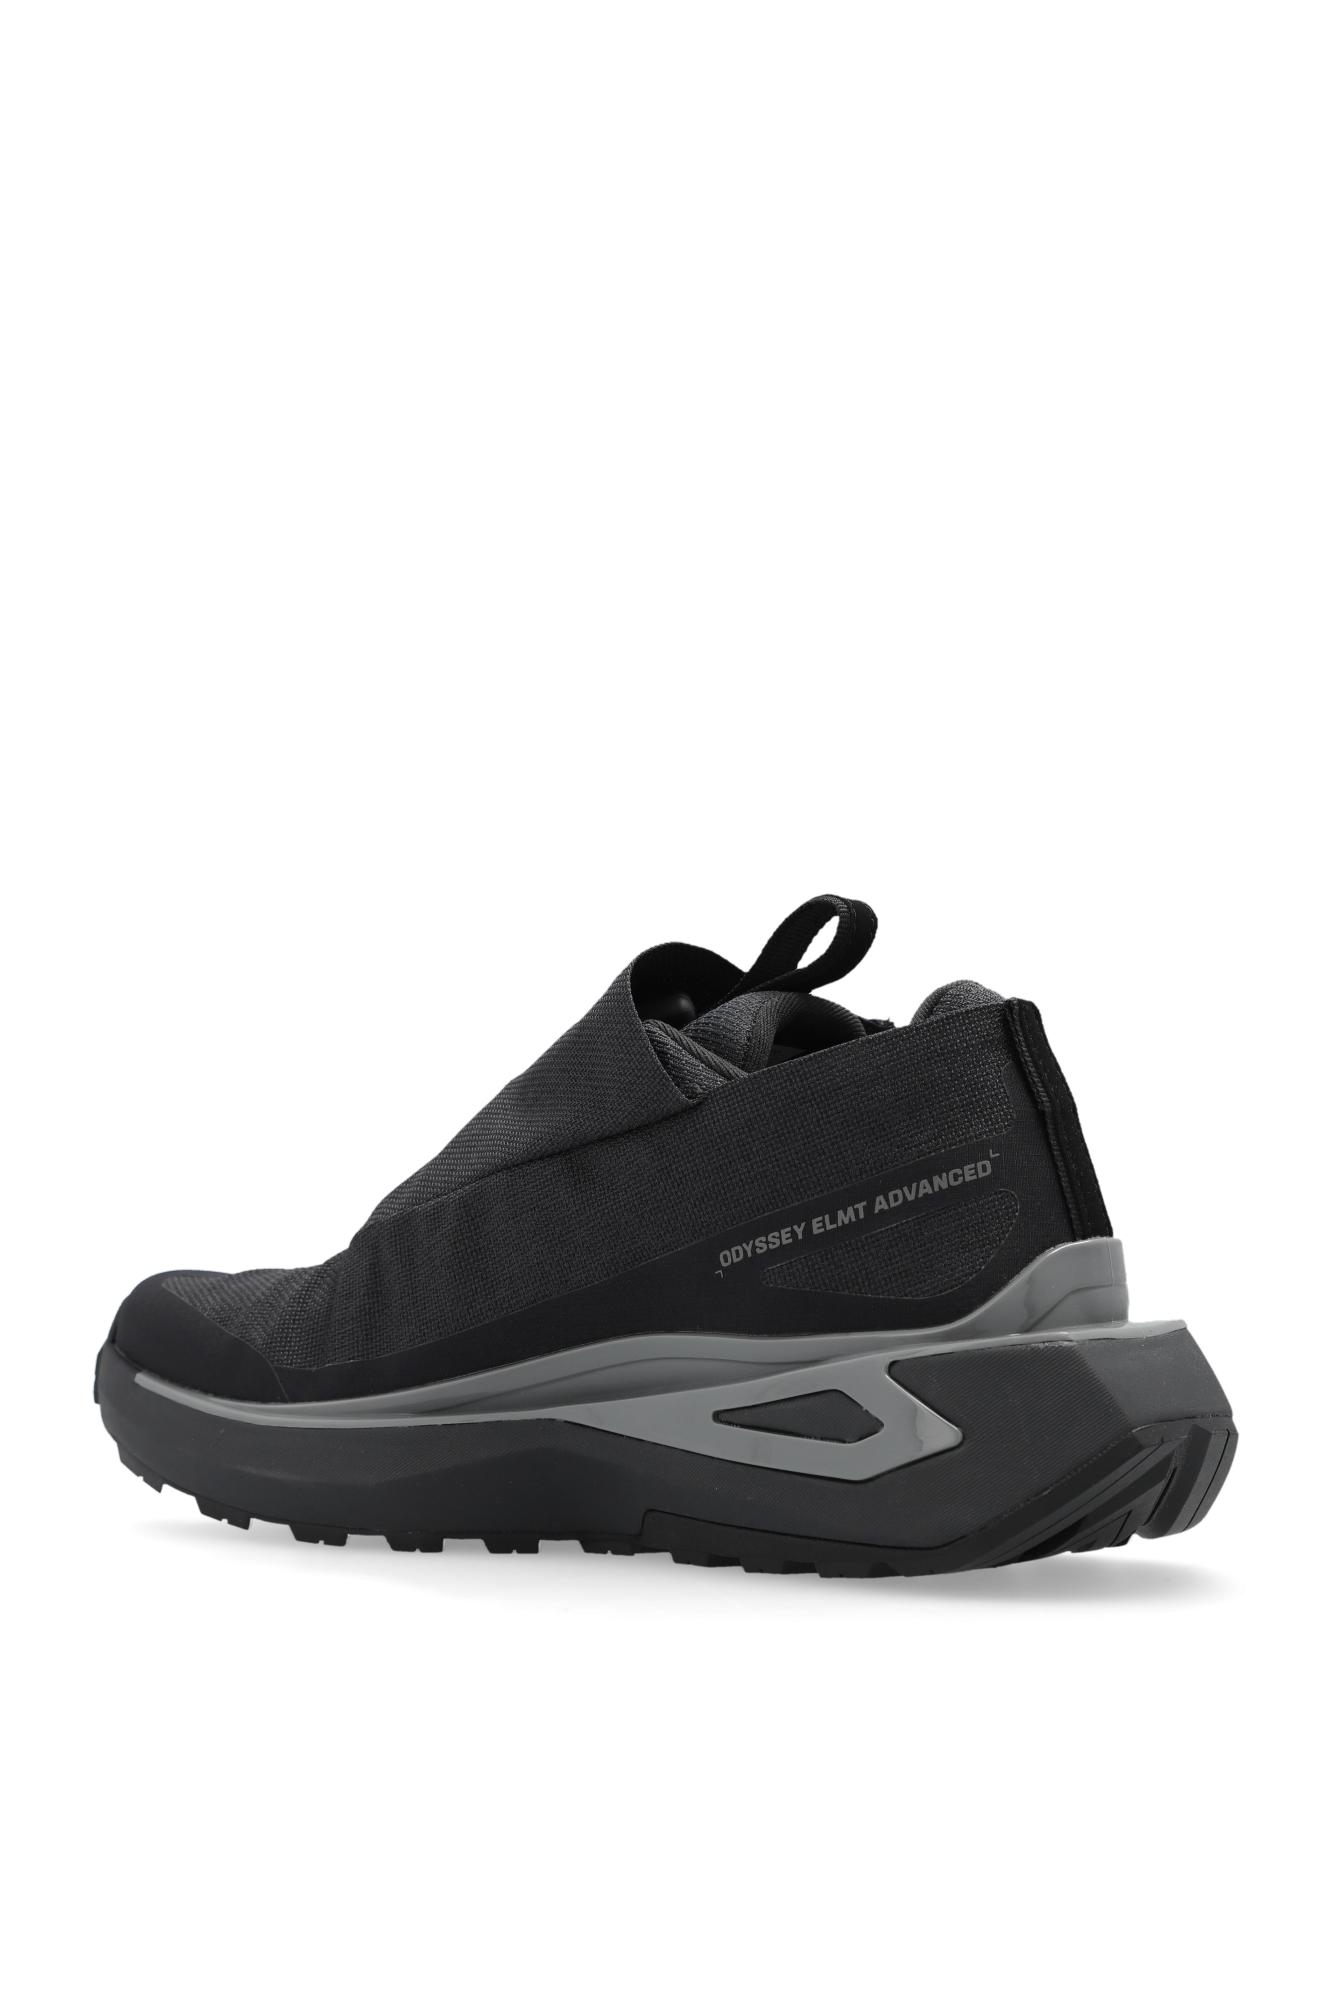 https://cdna.lystit.com/photos/vitkac/f696d968/salomon-BLACK-odyssey-Elmt-Advanced-Sneakers.jpeg